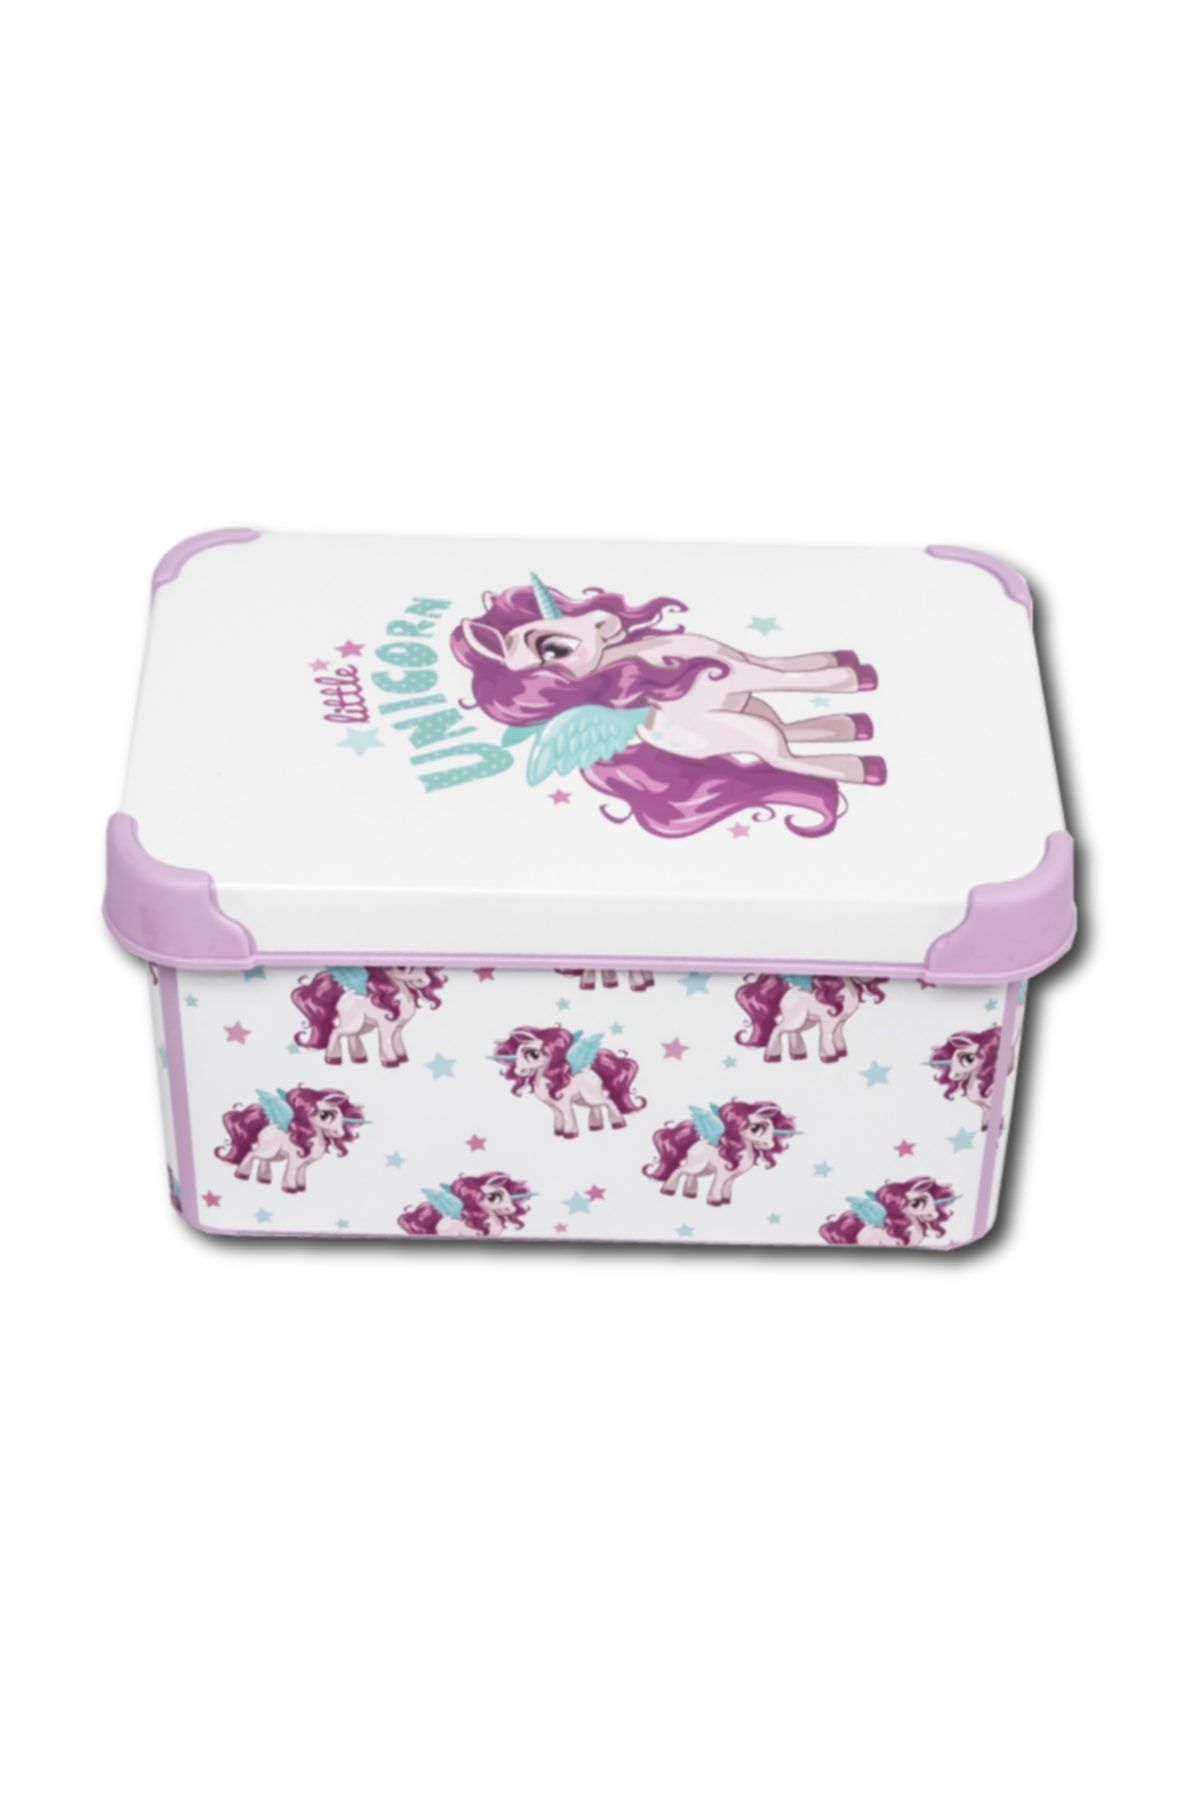 QUTU Style Box Unicorn - 5 Litre Dekoratif Saklama Kutusu